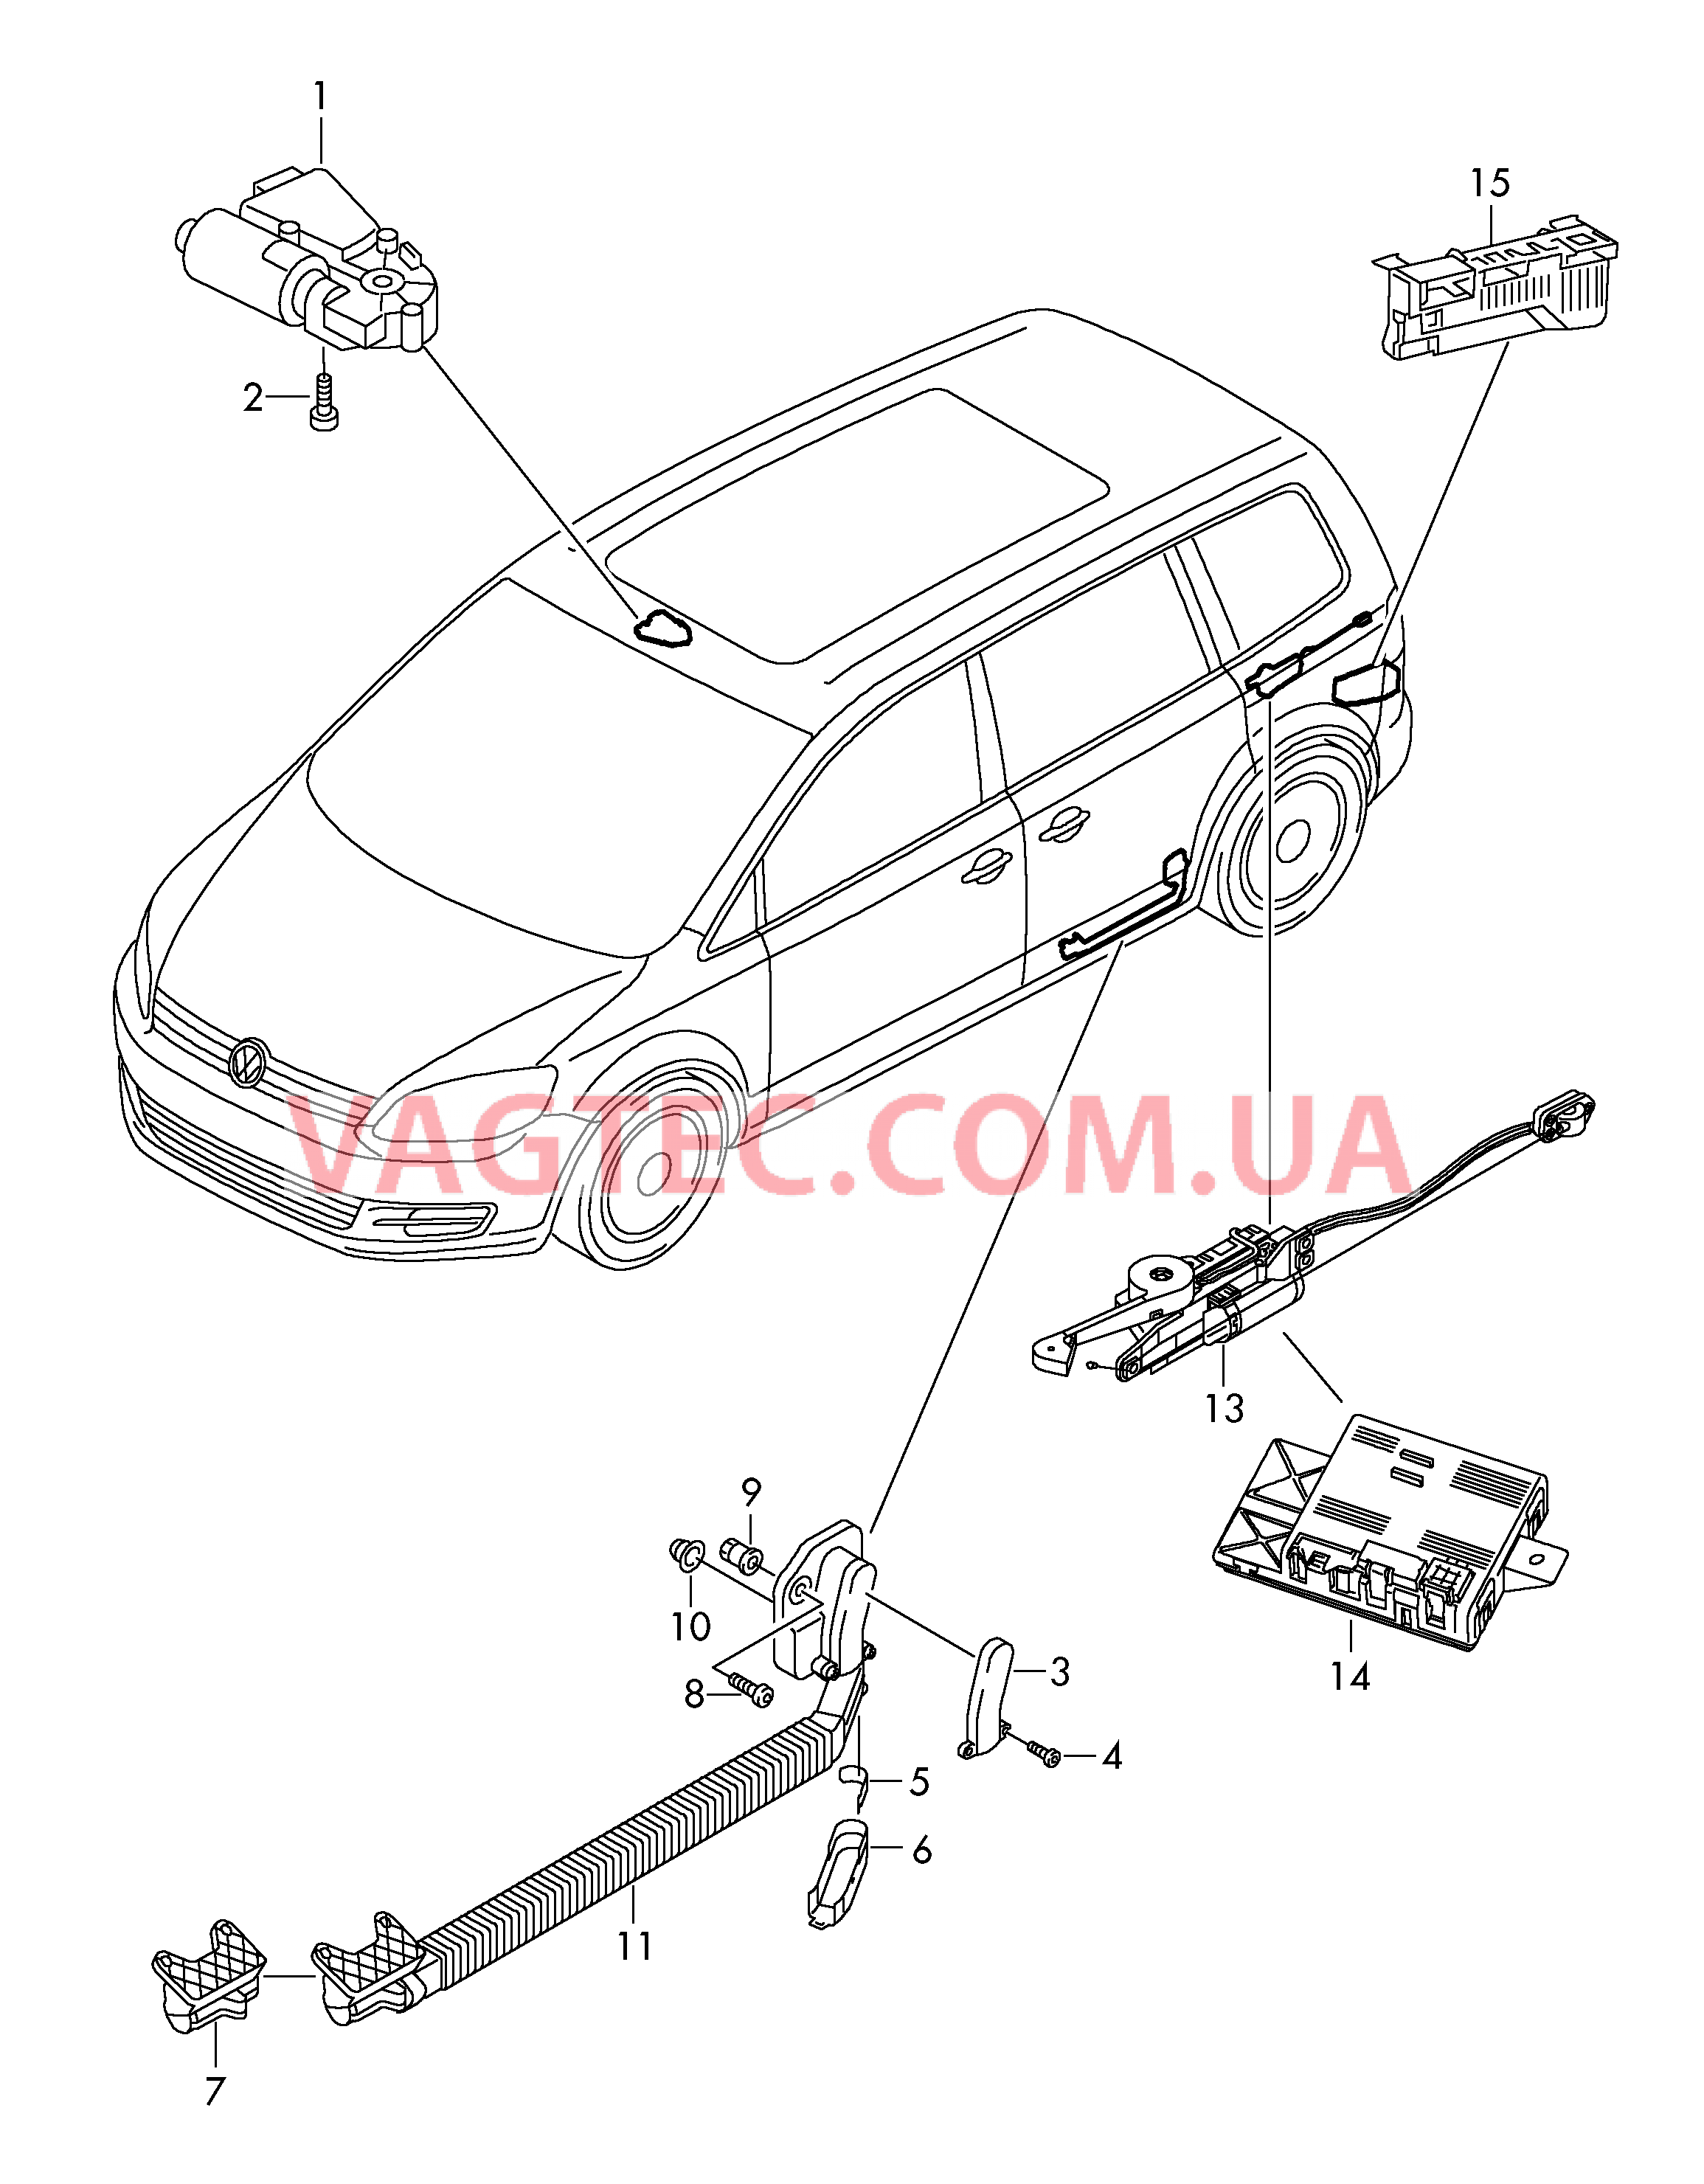 Мотор привода люка Электродетали для сдвижной двери  Блок управления доводчика  для SEAT Alhambra 2017